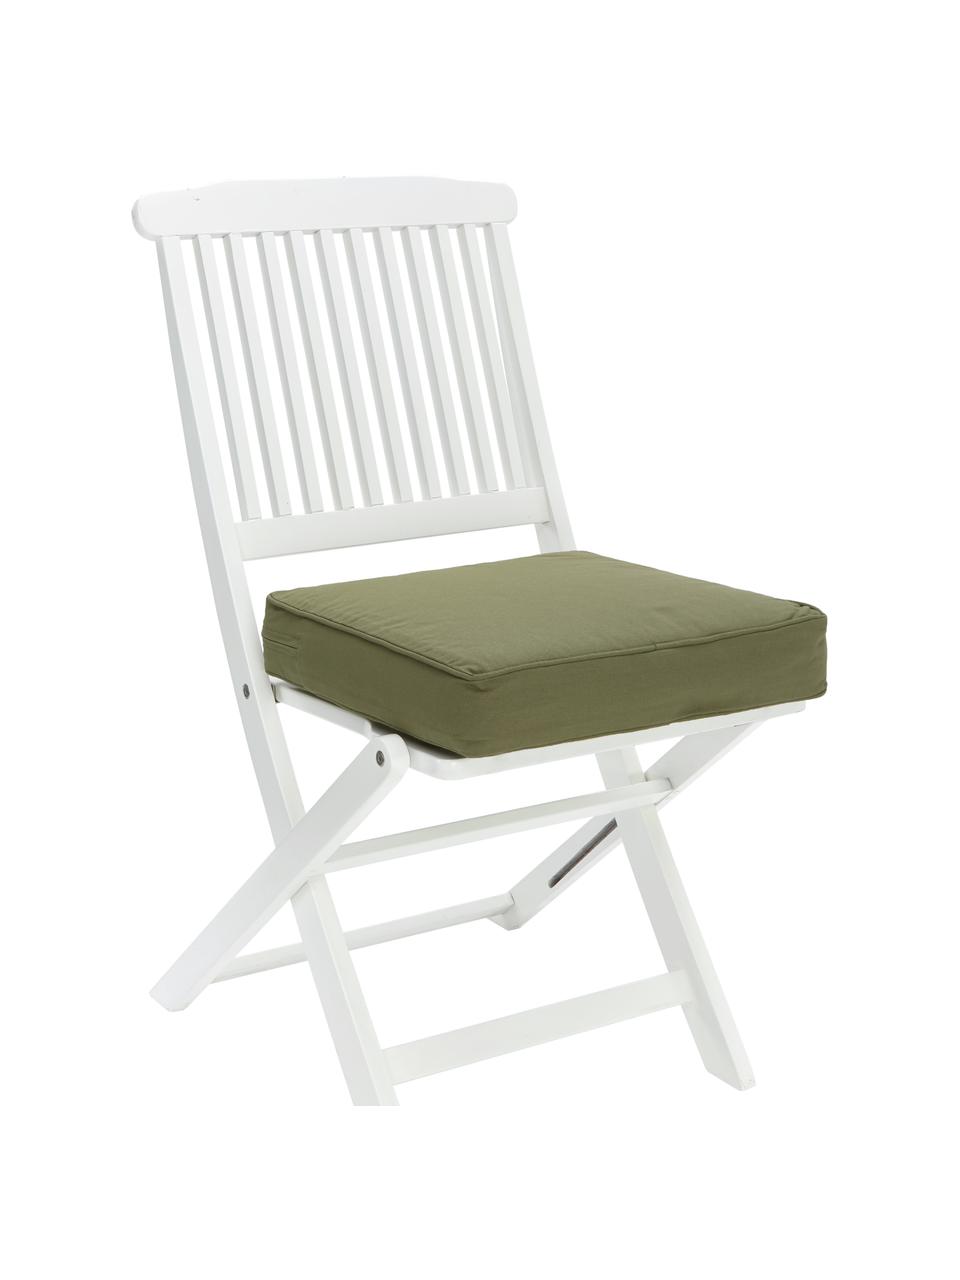 Hohes Baumwoll-Sitzkissen Zoey in Olivgrün, Bezug: 100% Baumwolle, Olivgrün, B 40 x L 40 cm